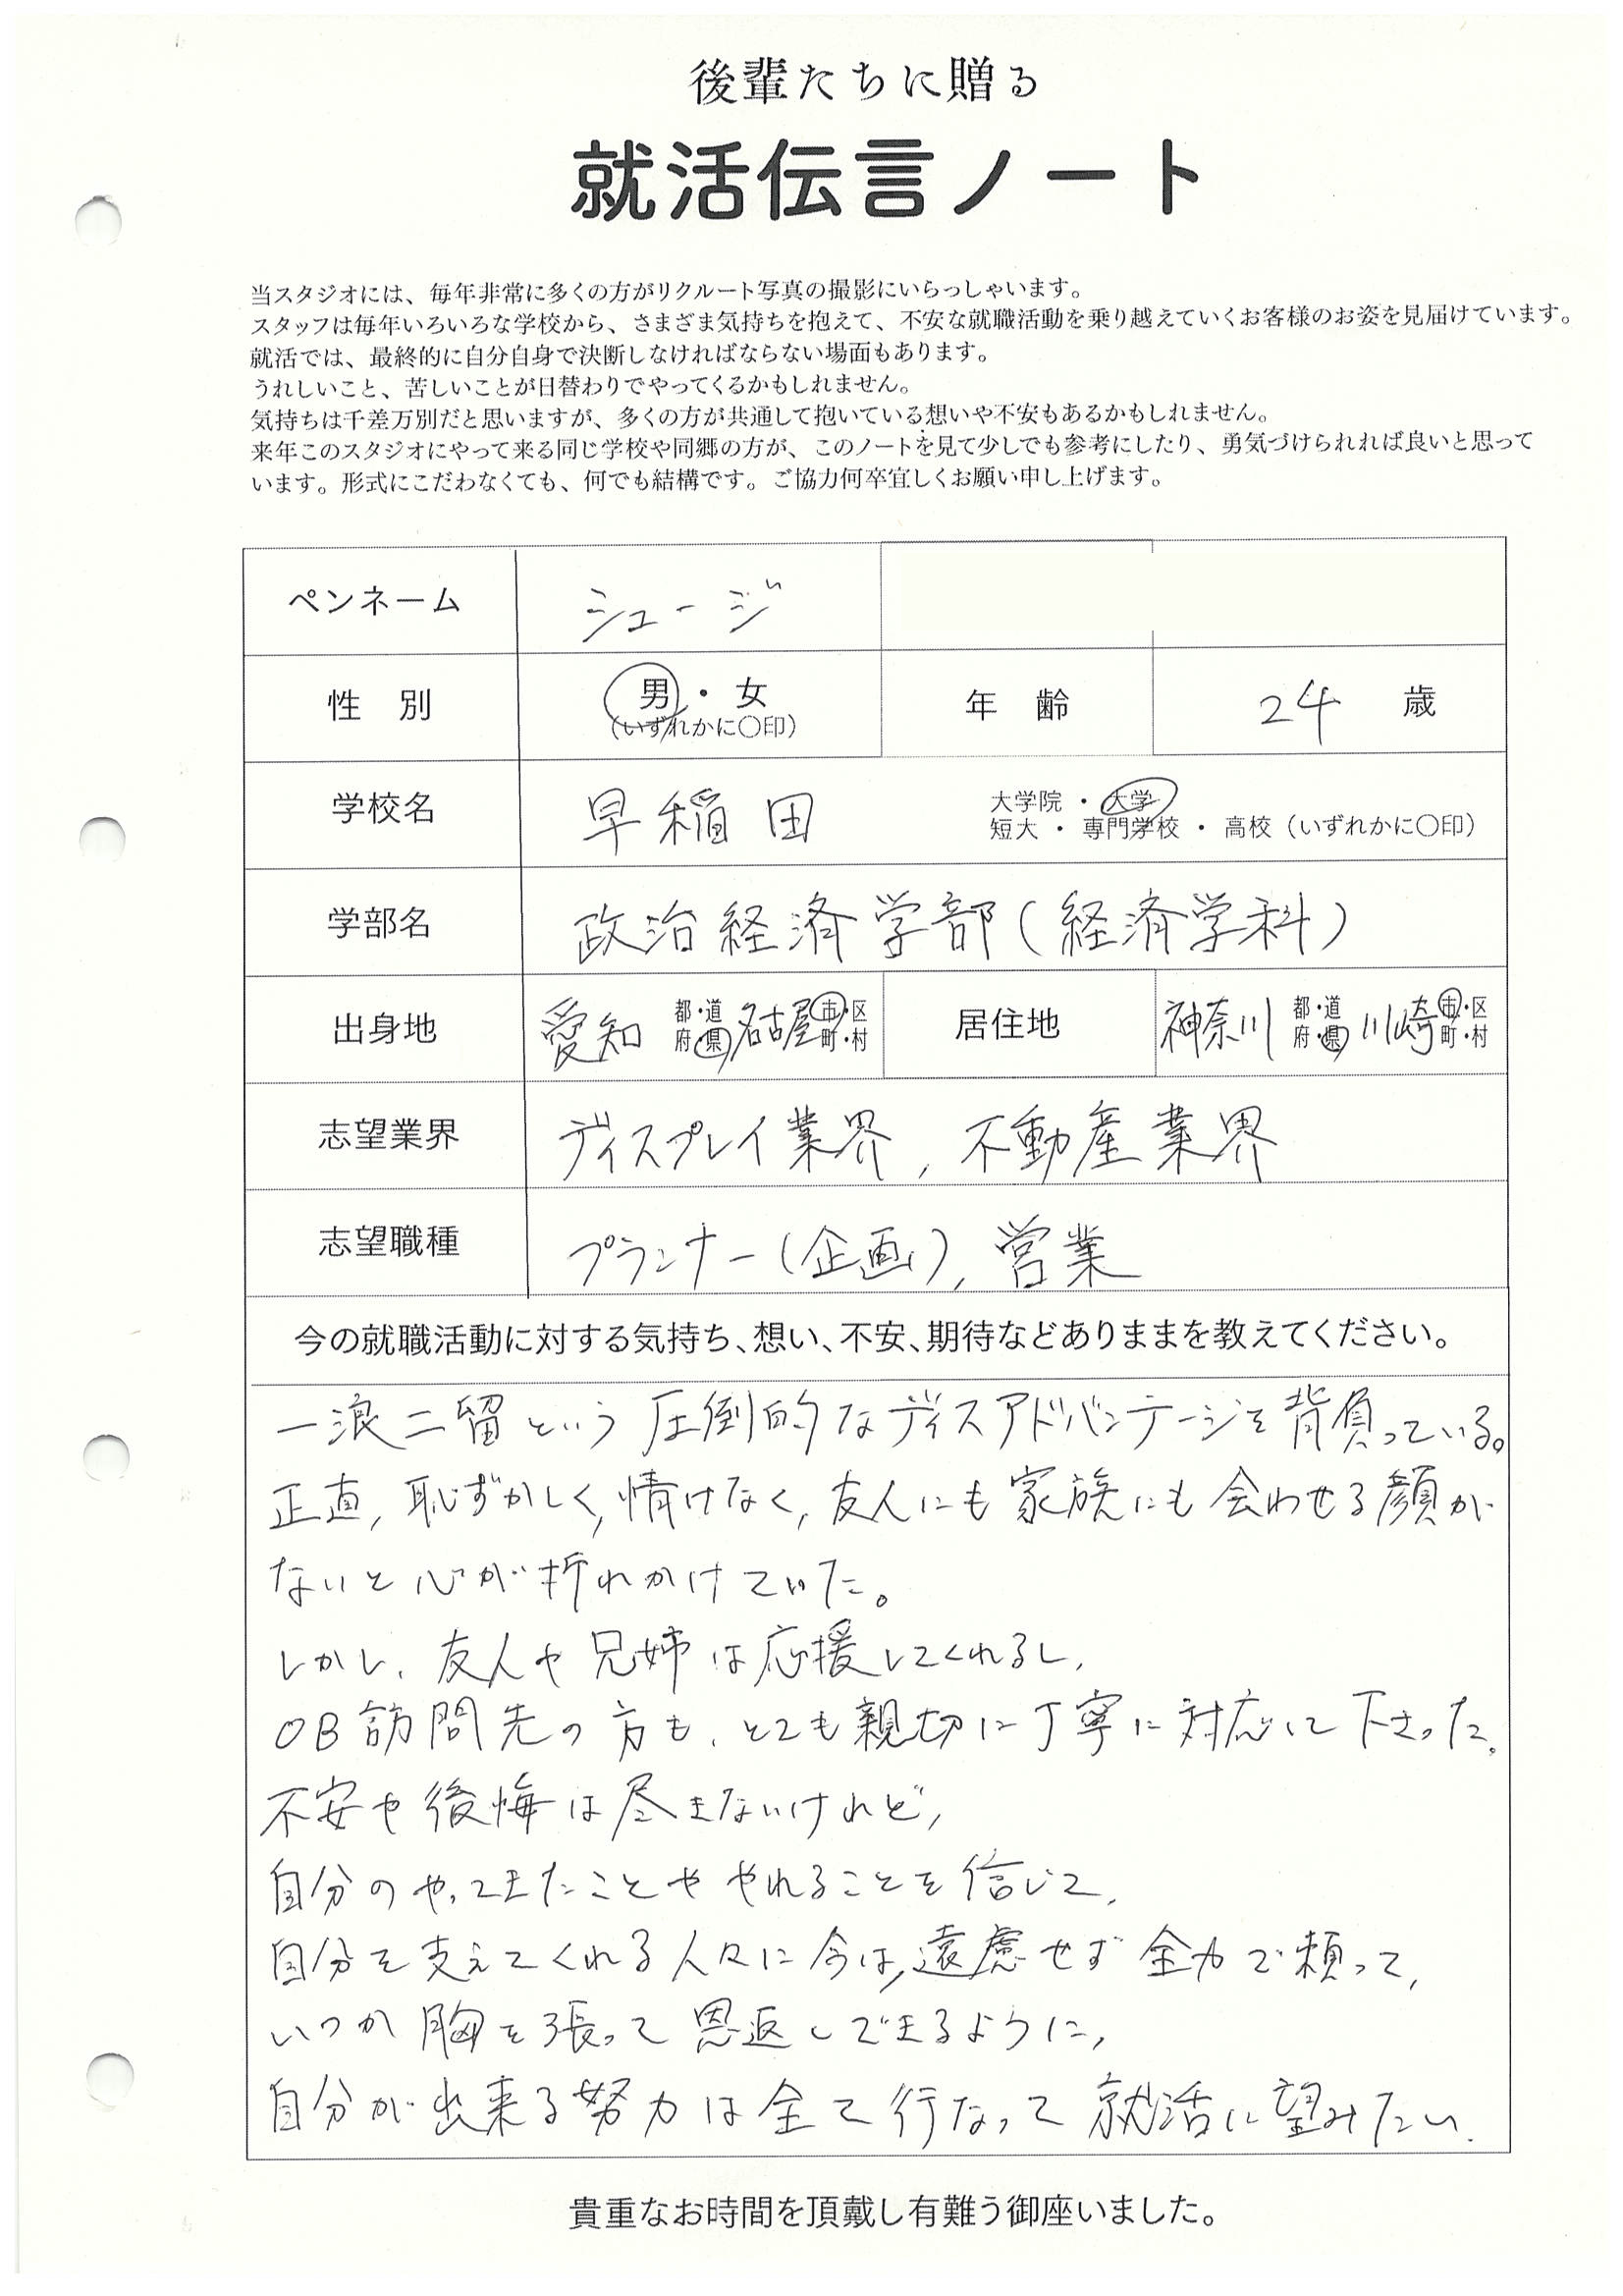 早稲田大学 政治経済学部 シュージさんの直筆メッセージ リクルートフォトスタジオで就活証明写真を撮影